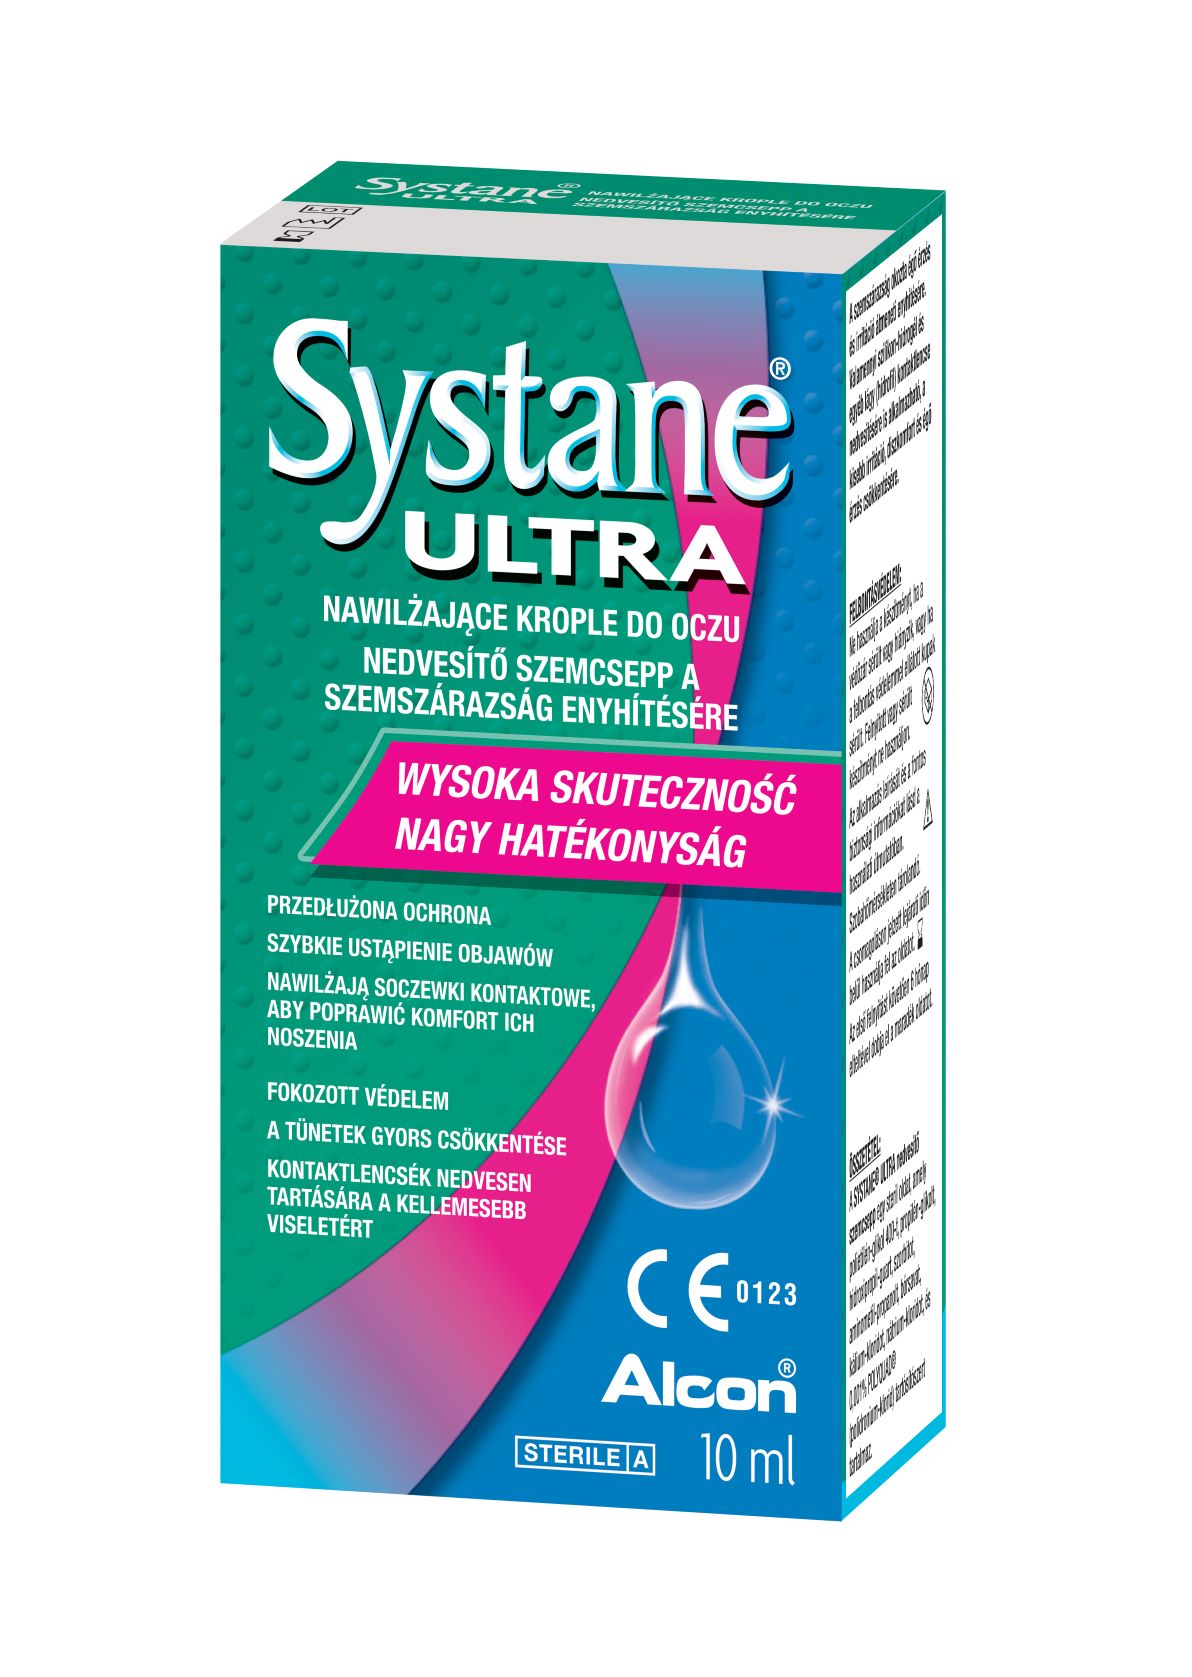 Systane Ultra lubrikáló szemcsepp